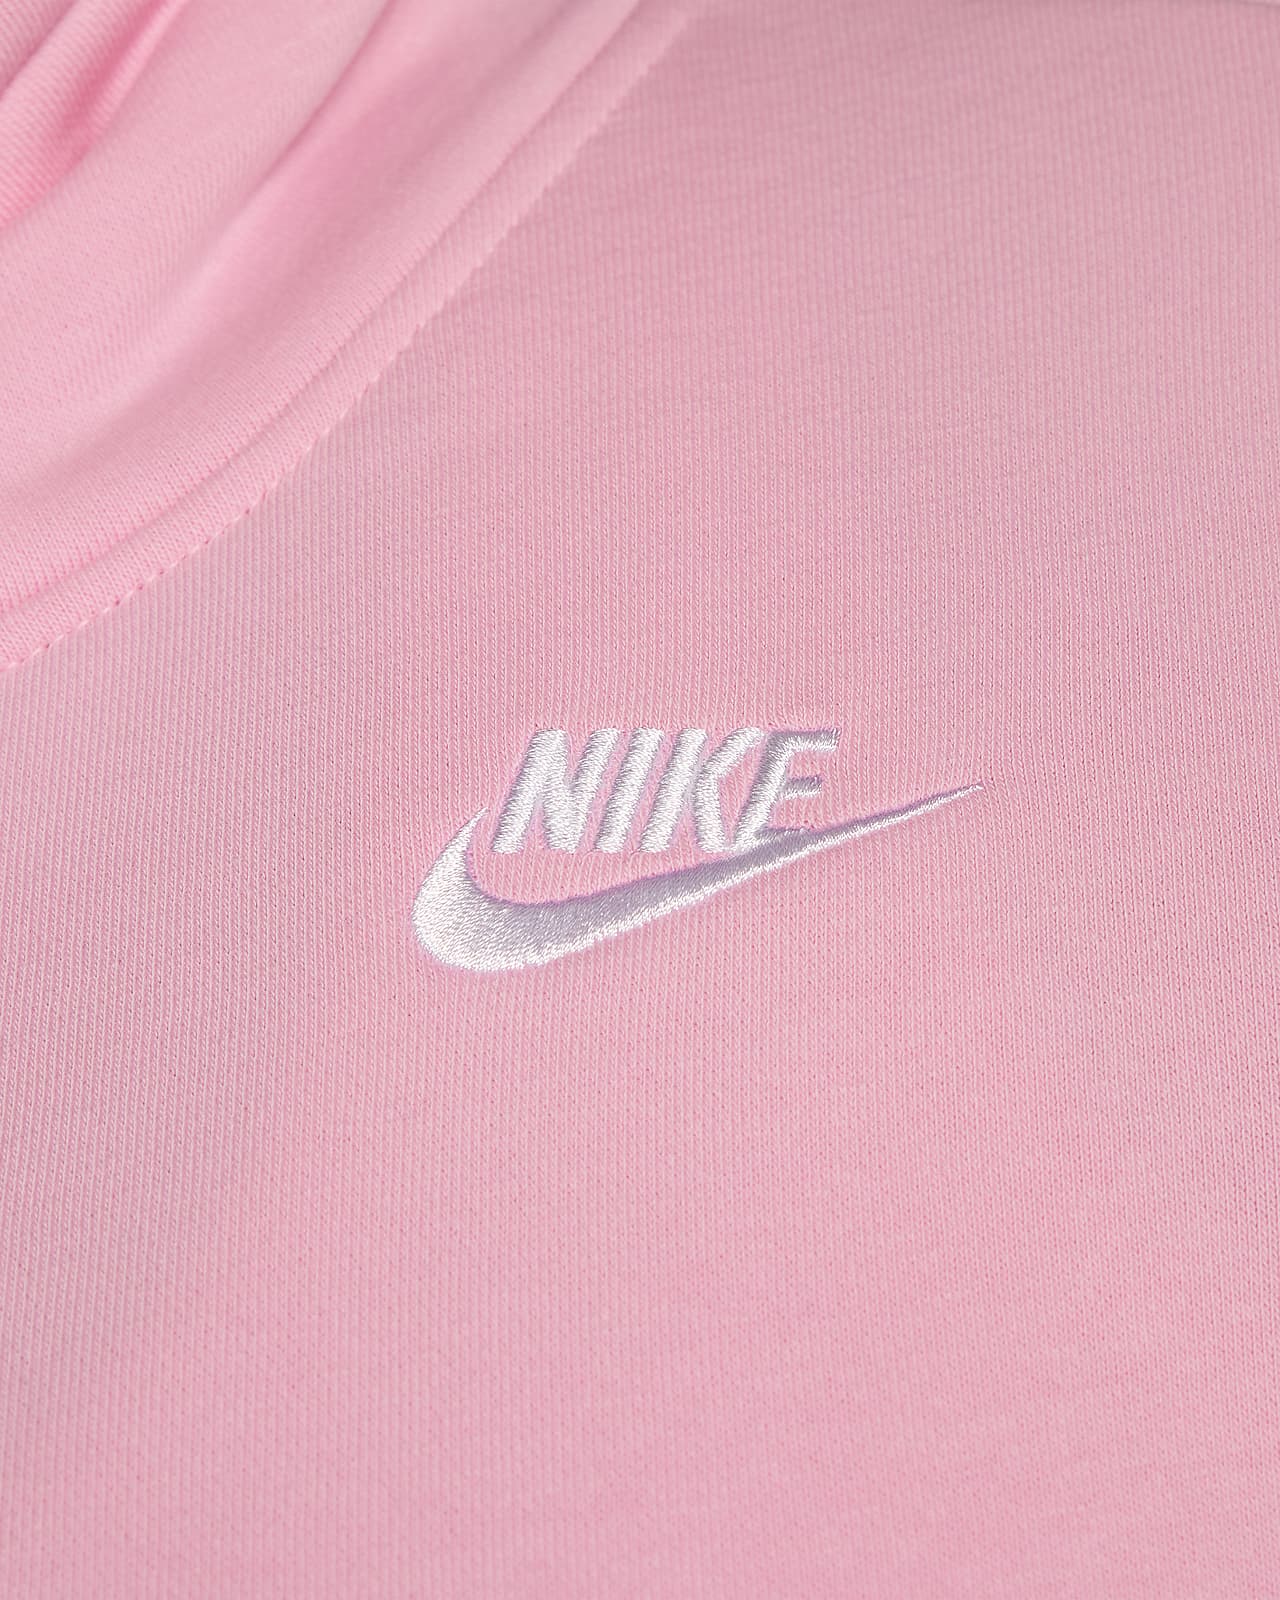 Nike Sportswear Club Fleece Women's Crew-Neck Sweatshirt (Plus Size)